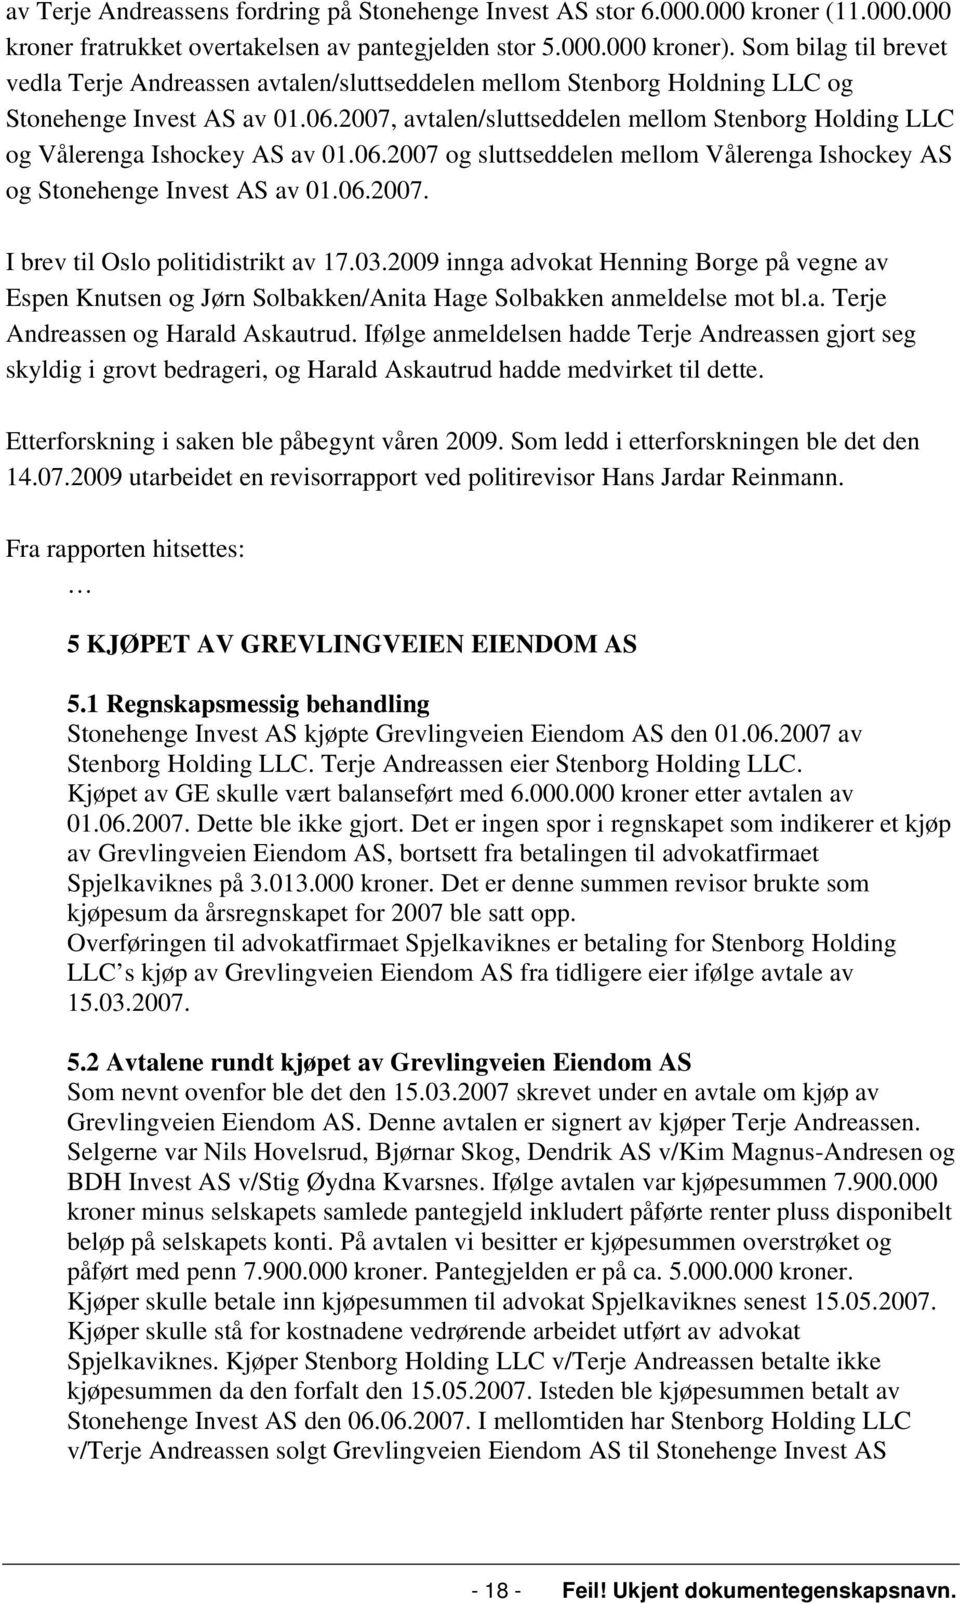 2007, avtalen/sluttseddelen mellom Stenborg Holding LLC og Vålerenga Ishockey AS av 01.06.2007 og sluttseddelen mellom Vålerenga Ishockey AS og Stonehenge Invest AS av 01.06.2007. I brev til Oslo politidistrikt av 17.